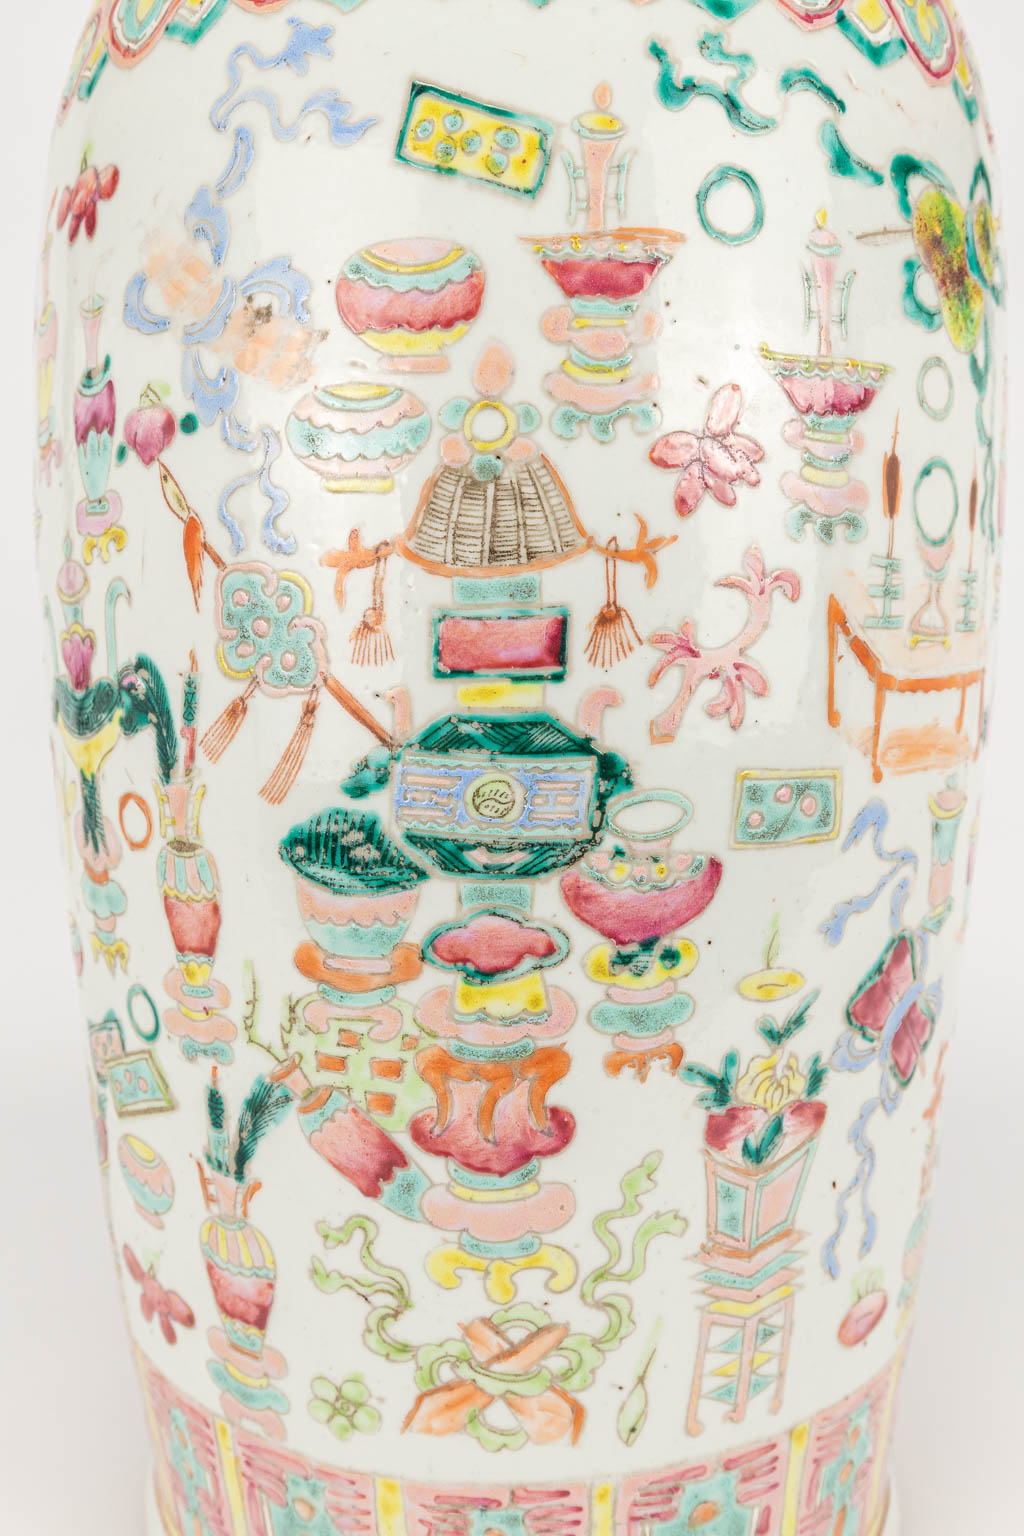 Een Chinese vaas gemaakt uit porselein met decor van 100 Antiquiteiten. (H:58cm)